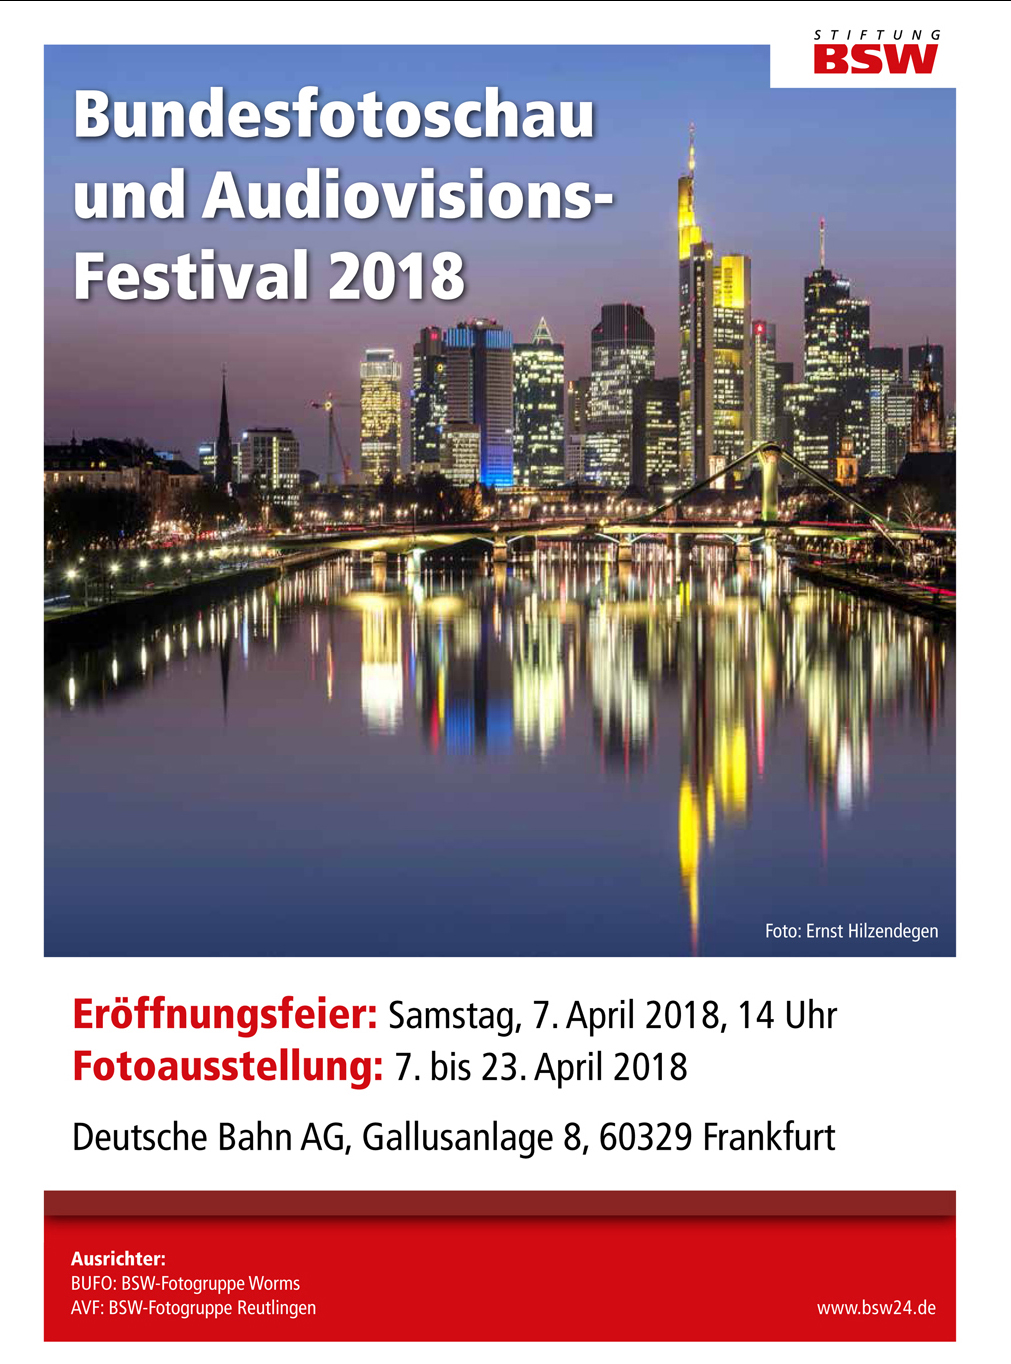 You are currently viewing Bundesfotoschau 2018 in Frankfurt vom 07. bis 23. April